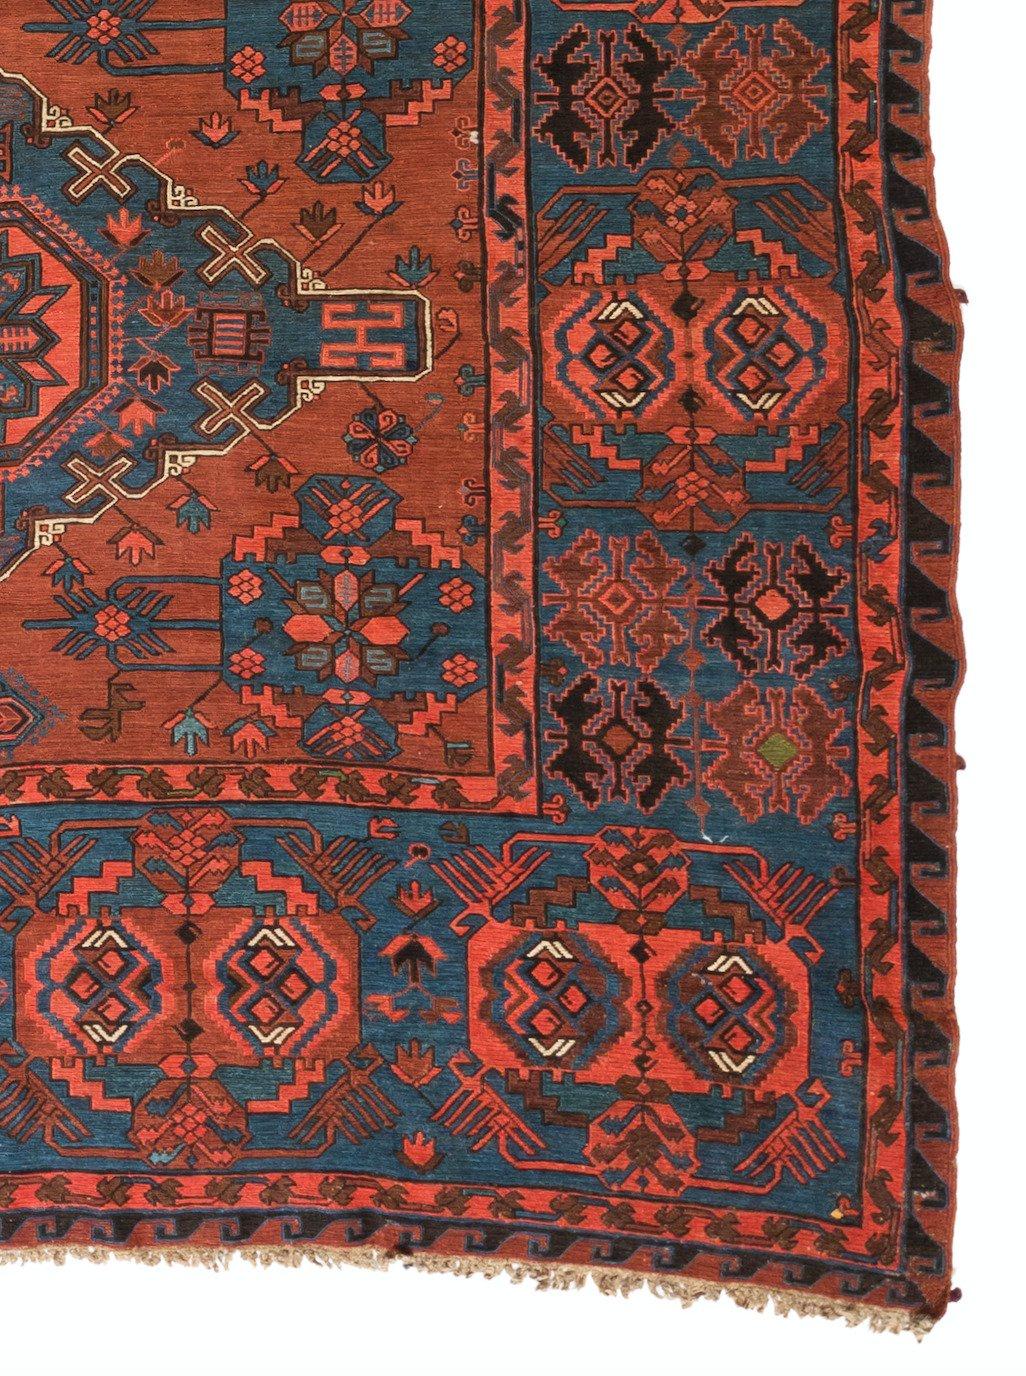 Le soumak est une technique de tapisserie consistant à tisser des textiles solides et décoratifs utilisés comme tapis et sacs domestiques. Il s'agit d'un type de tissage plat, ressemblant quelque peu au Kilim mais plus fort et plus épais, avec une